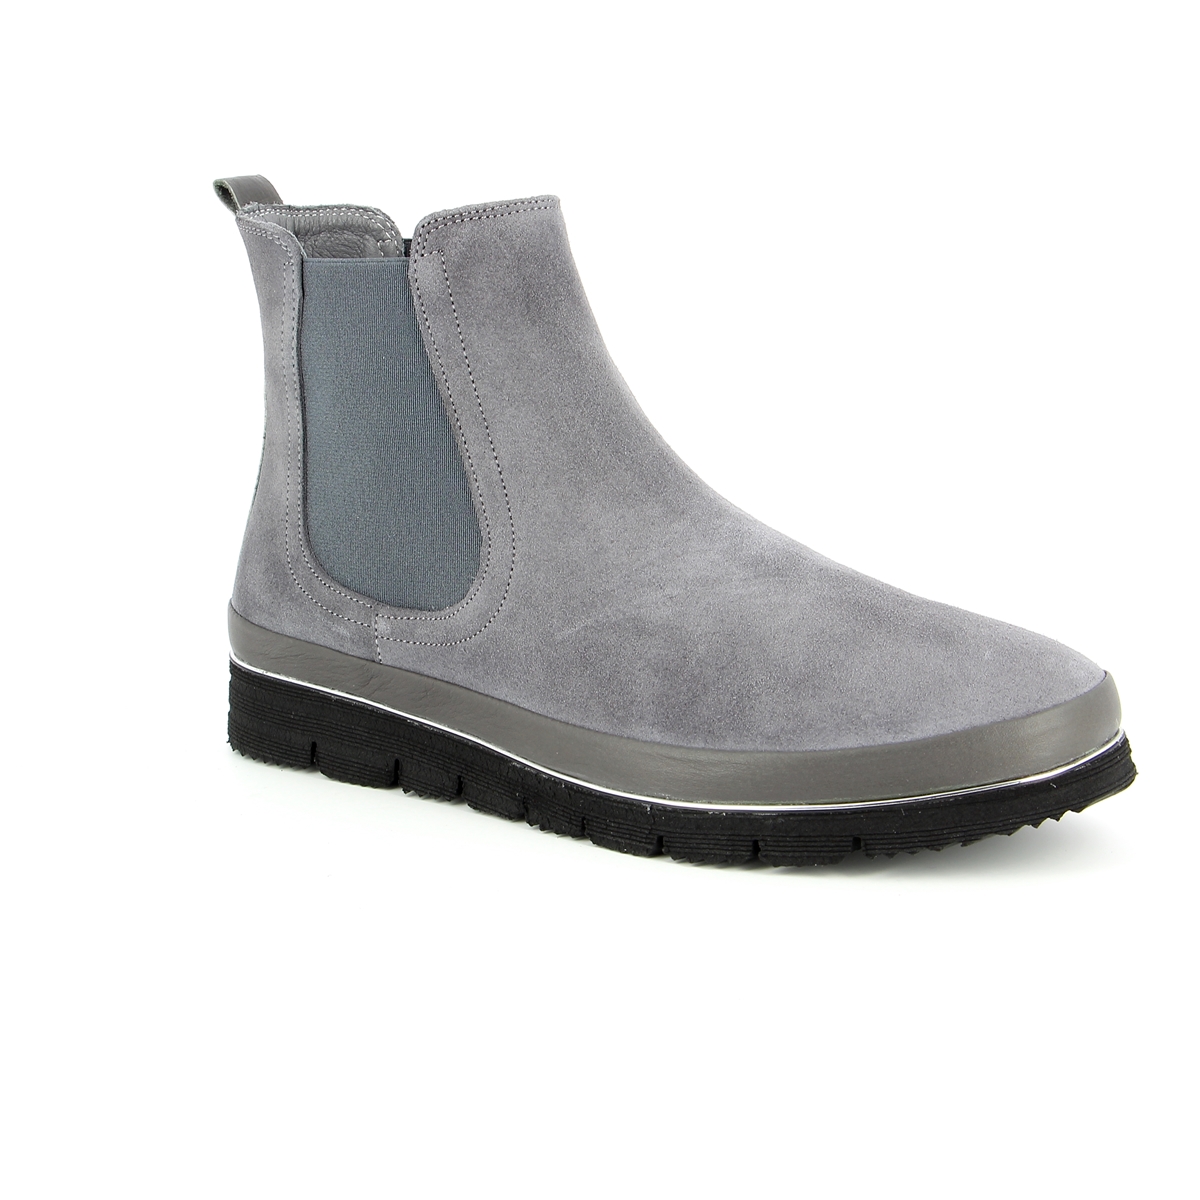 Sensunique Boots grijs